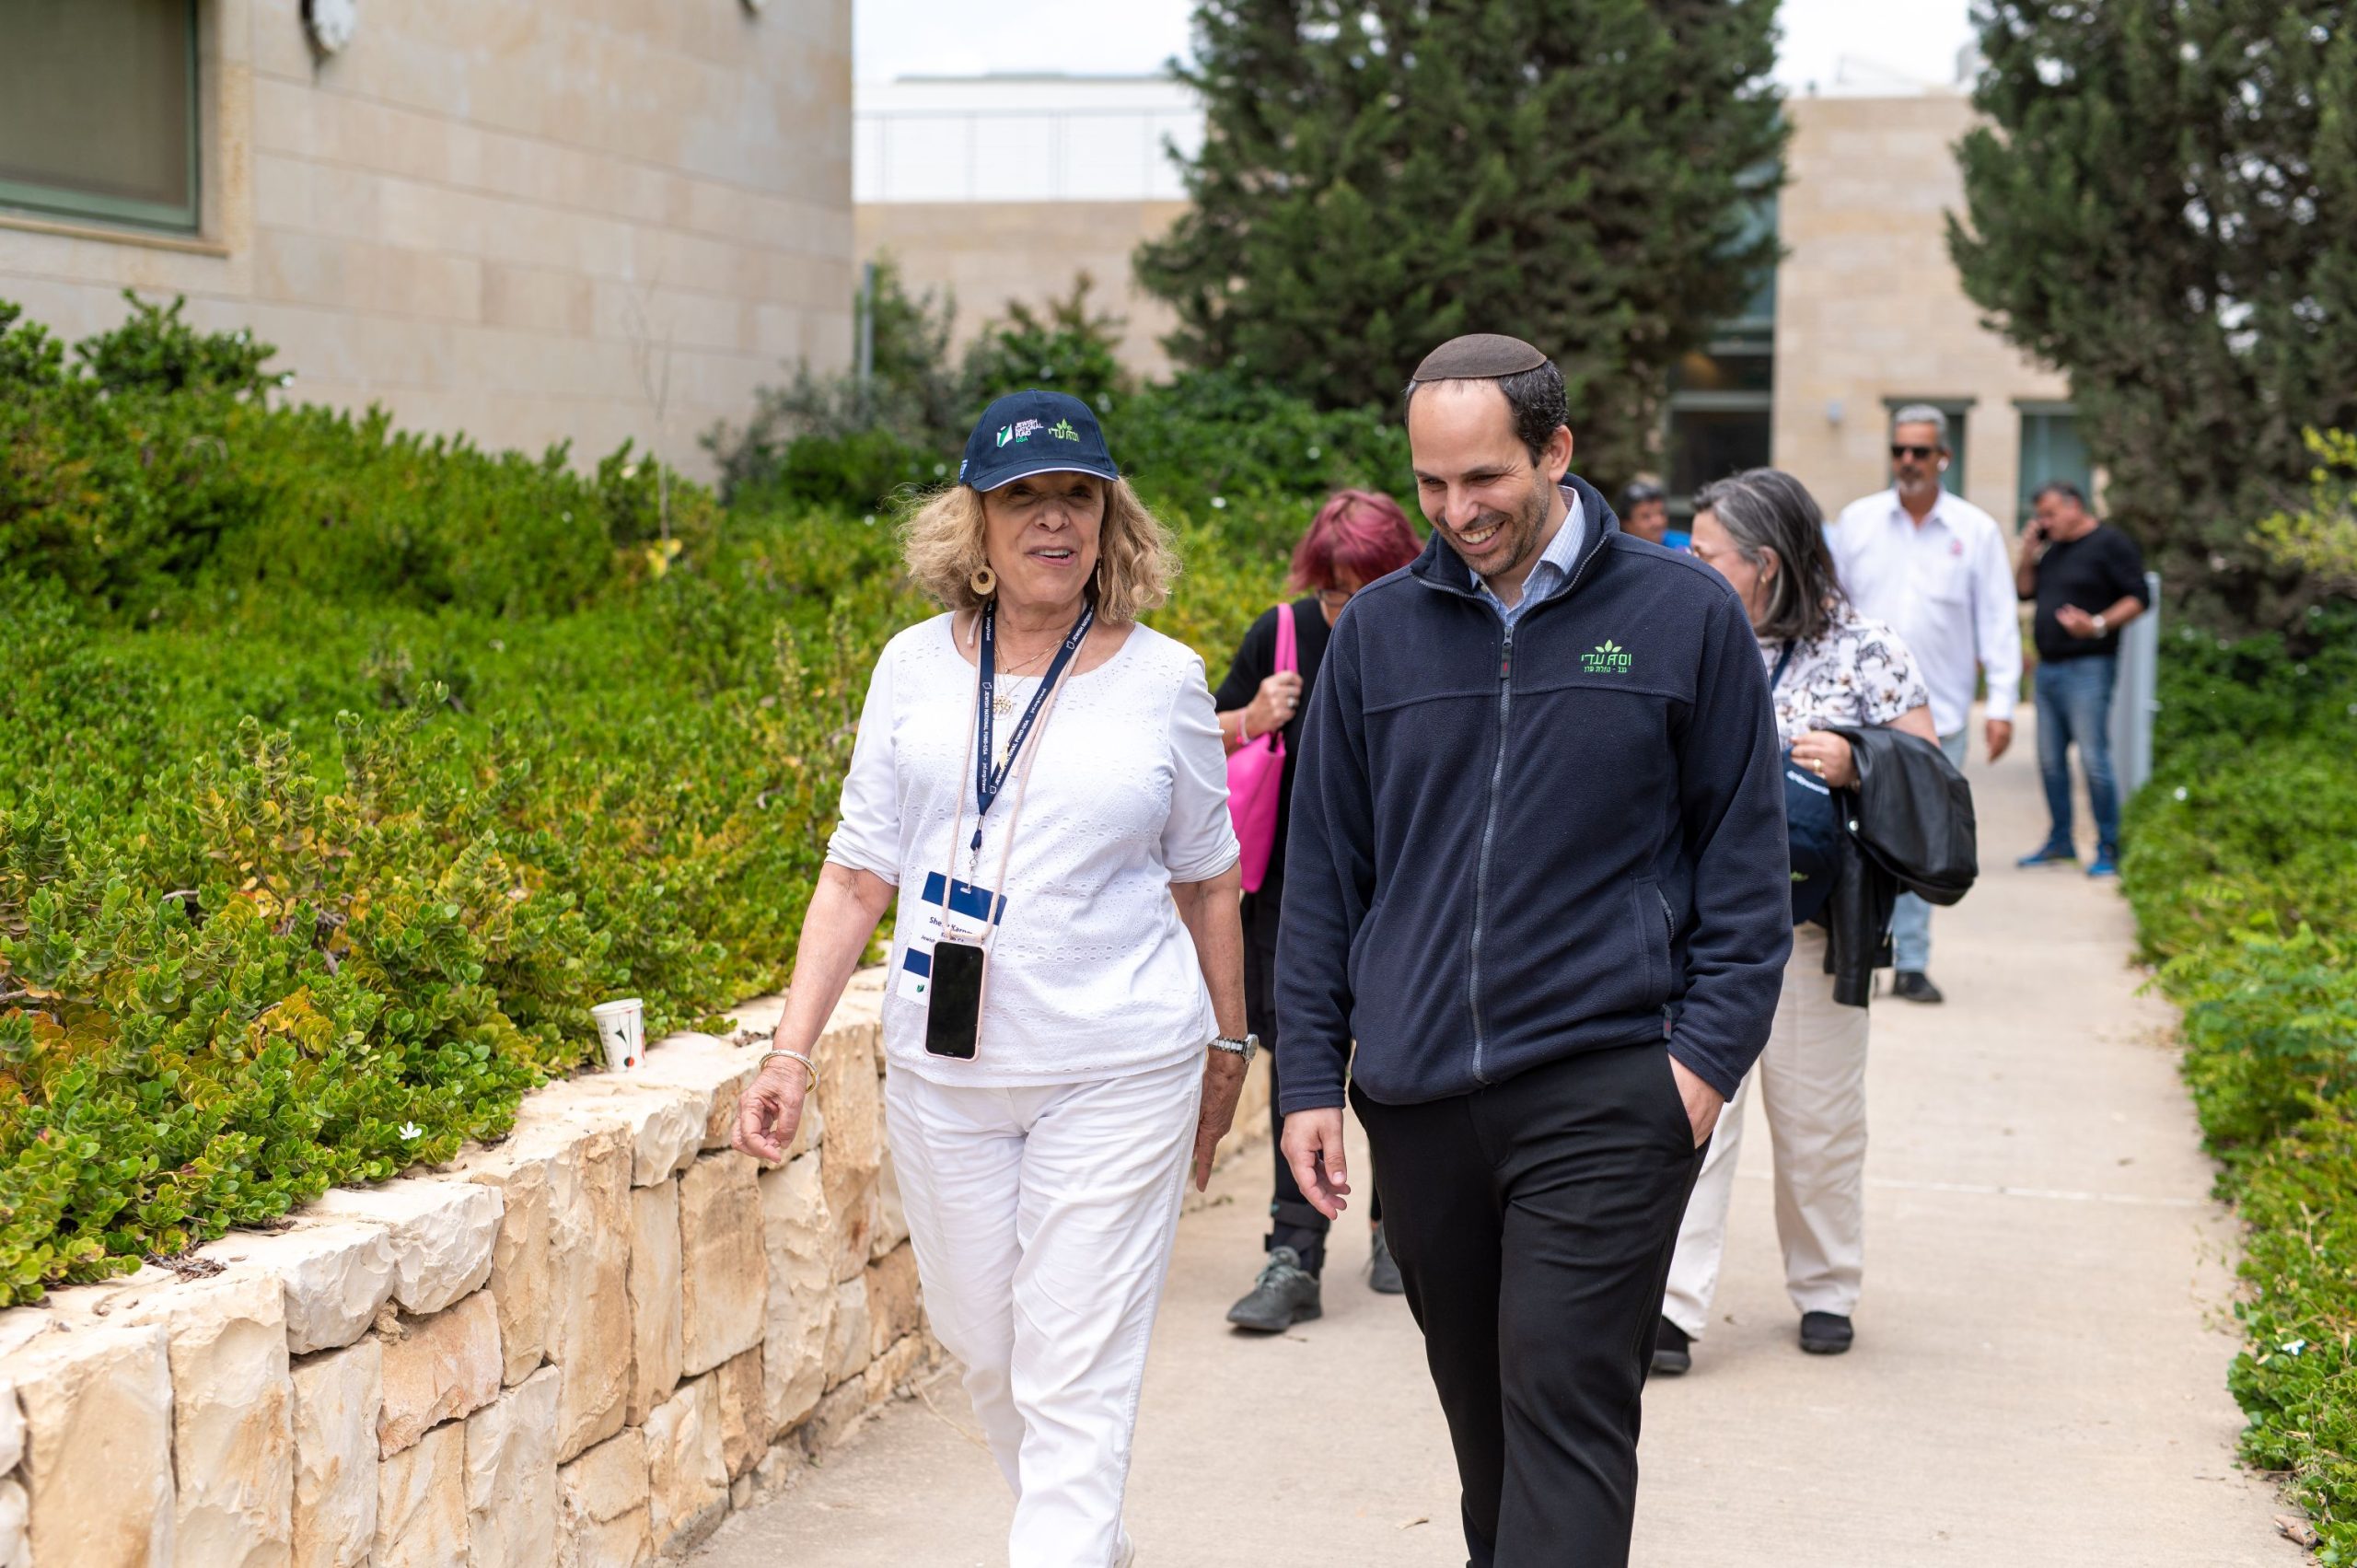 Dr. Shilo Kramer walking with a guest ד"ר שילו קרמר הולך עם אורחת